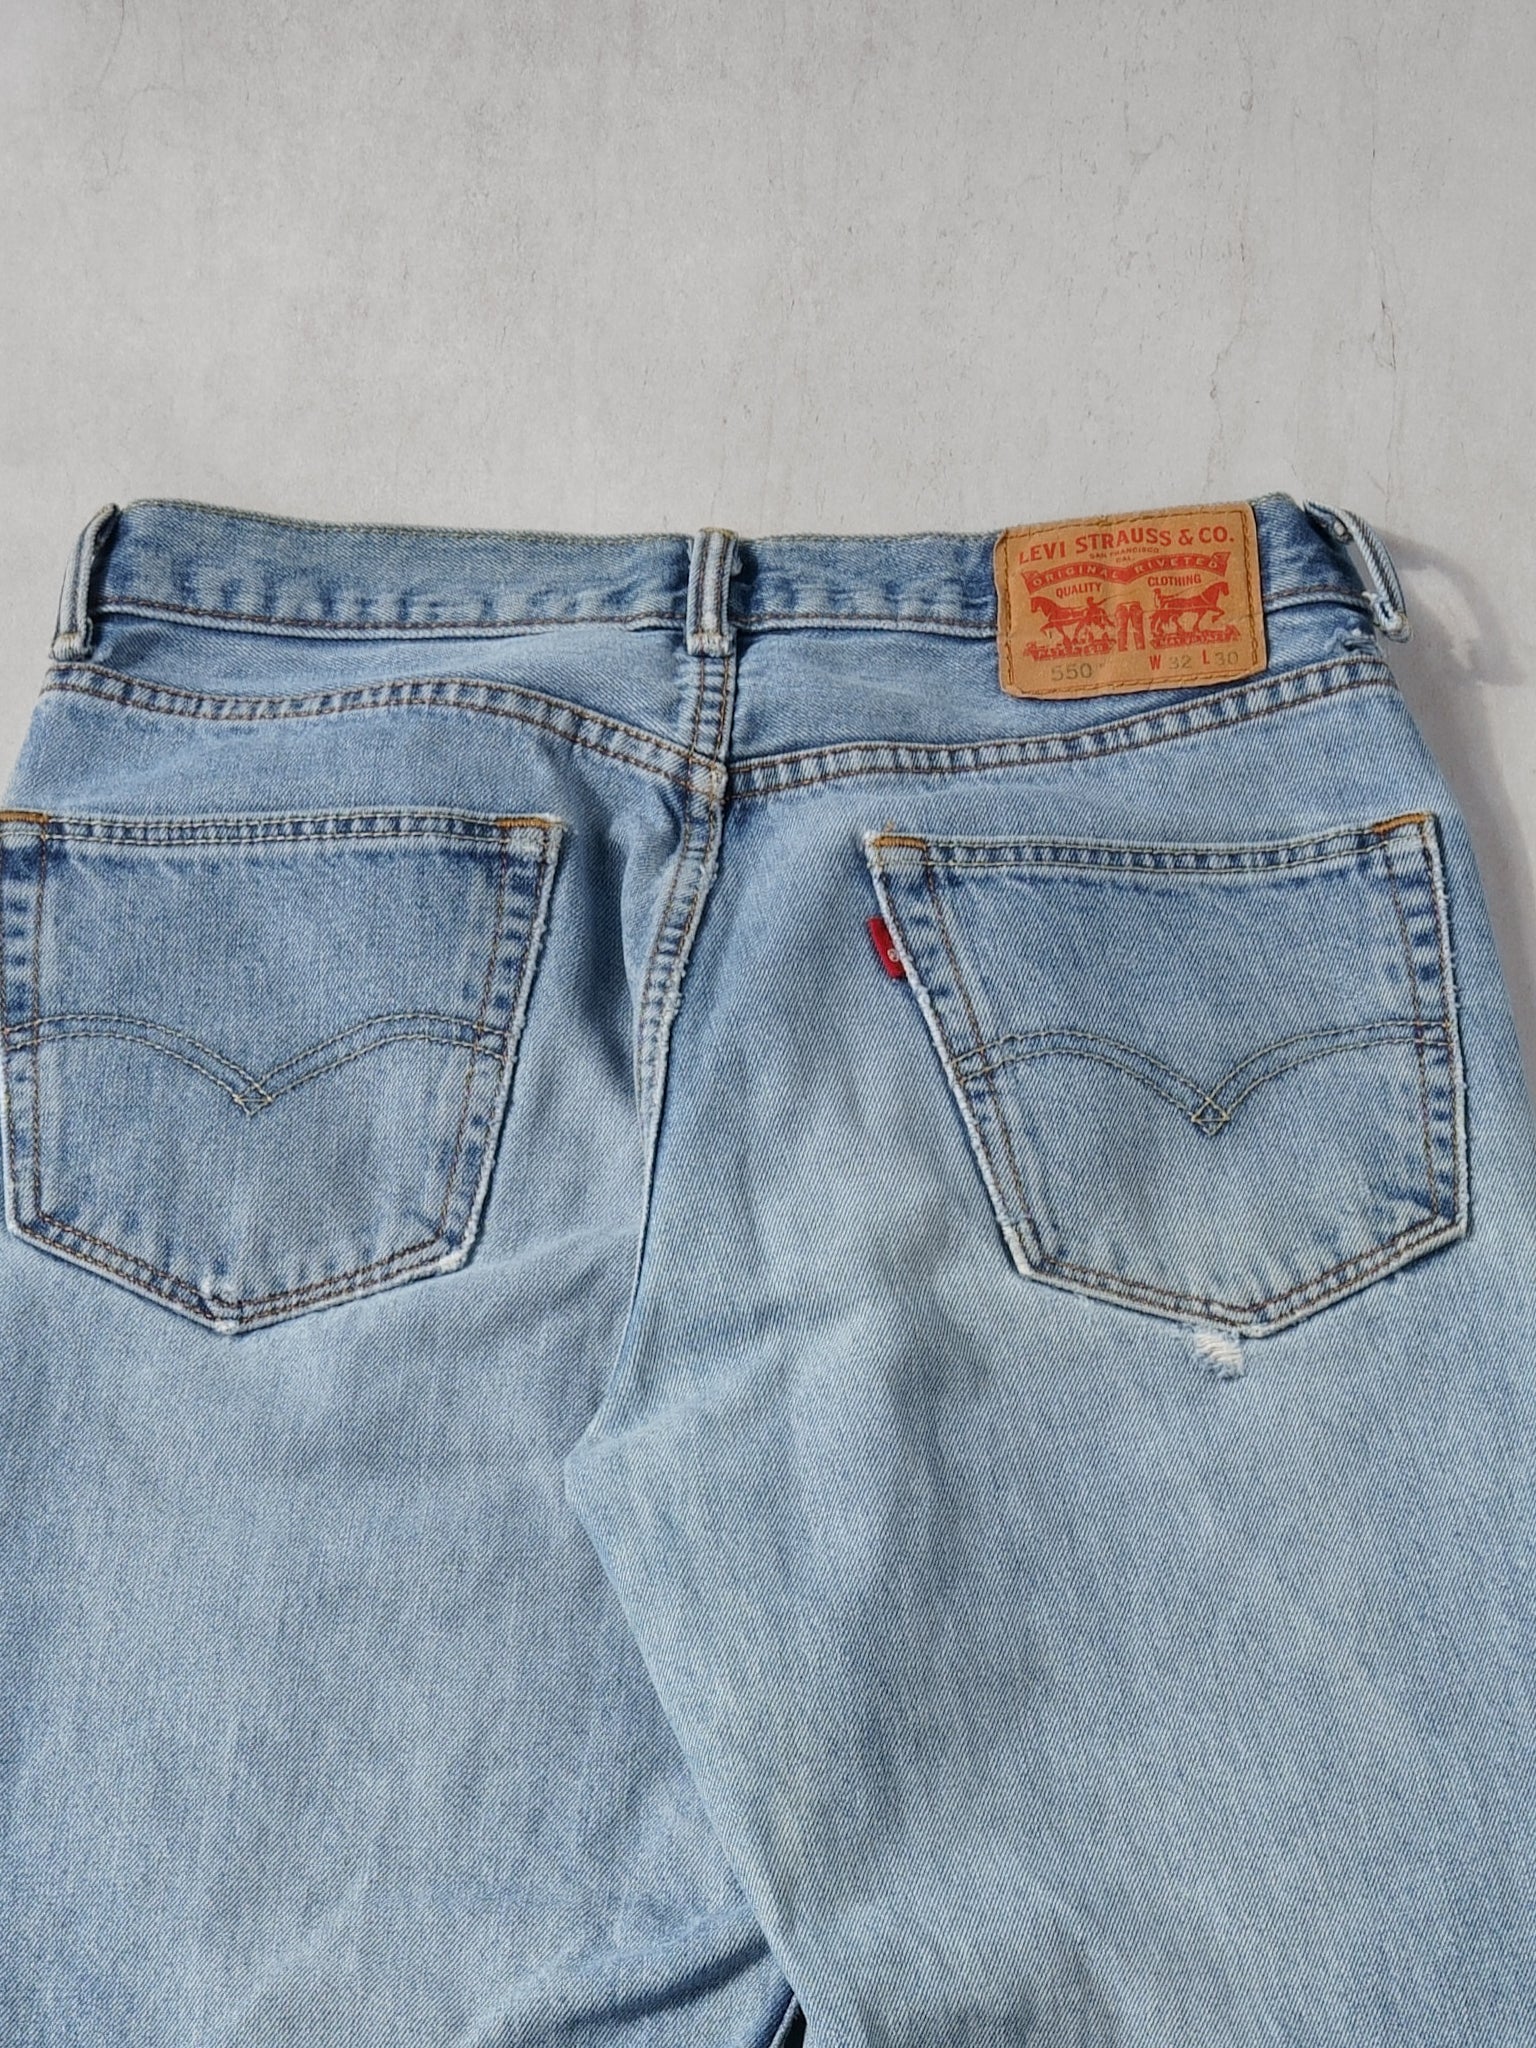 Vintage Y2K Blue Levi's 550 Denim Jeans (30x29)